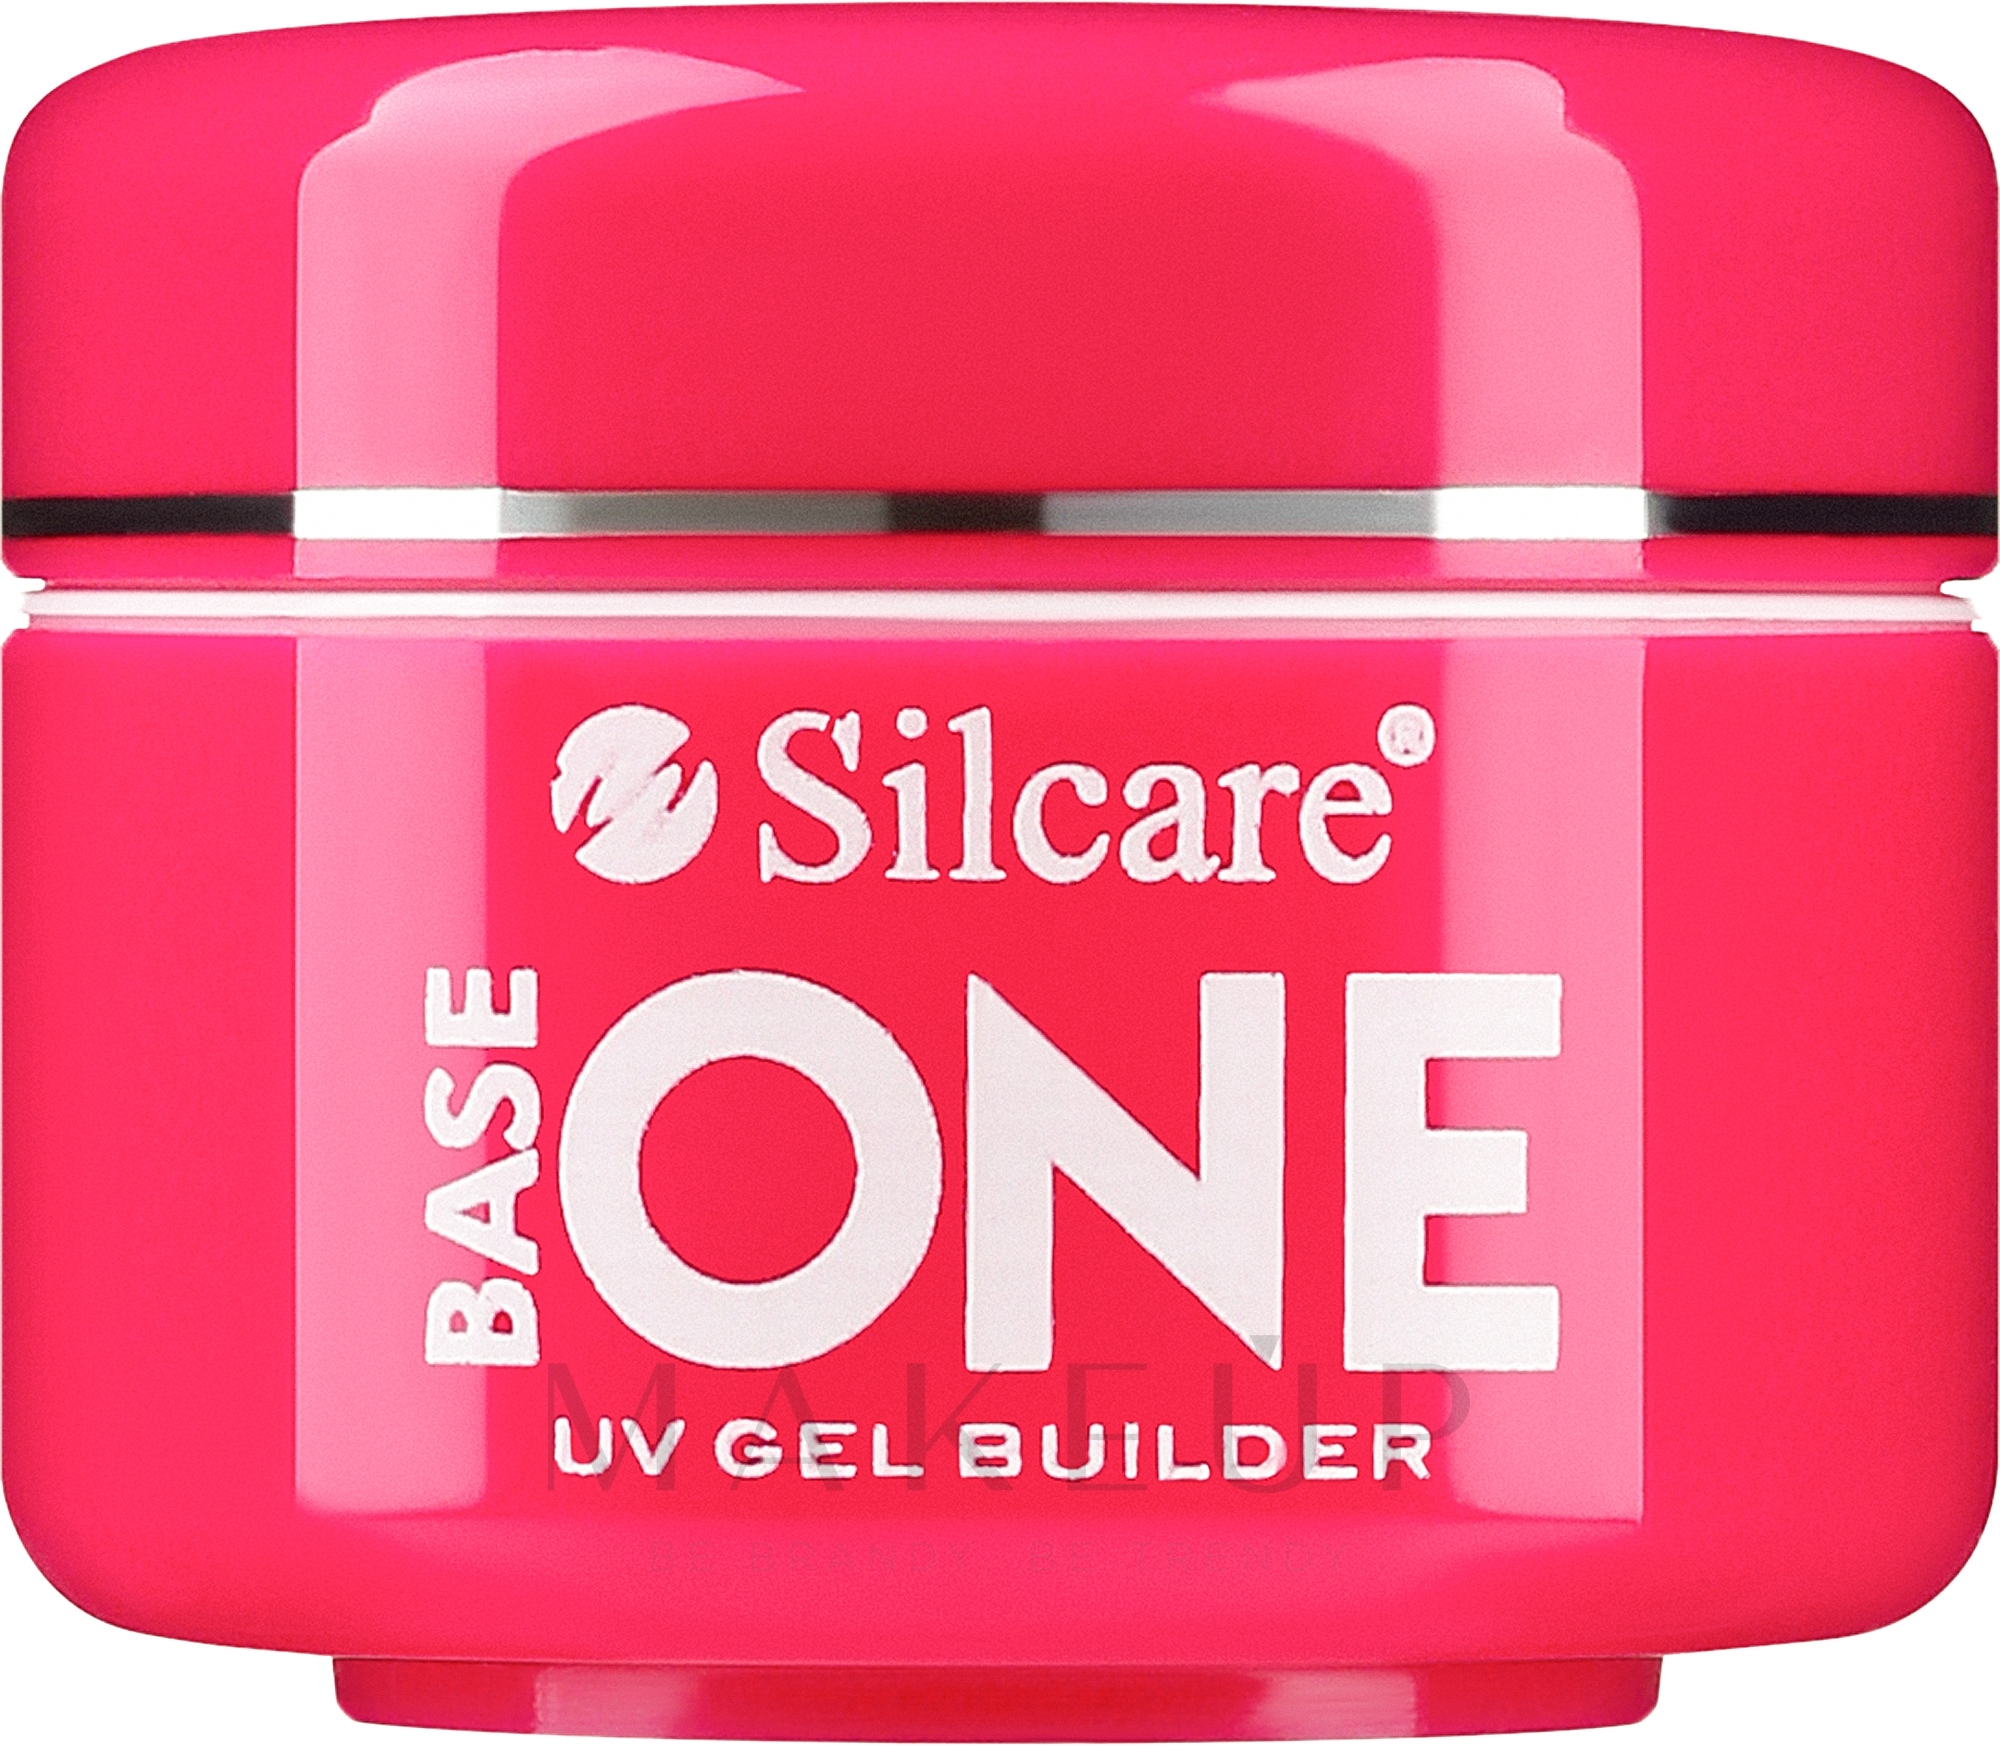 UV Aufbaugel Cover Light - Silcare Base One UV Gel Builder Cover Light — Bild 5 g